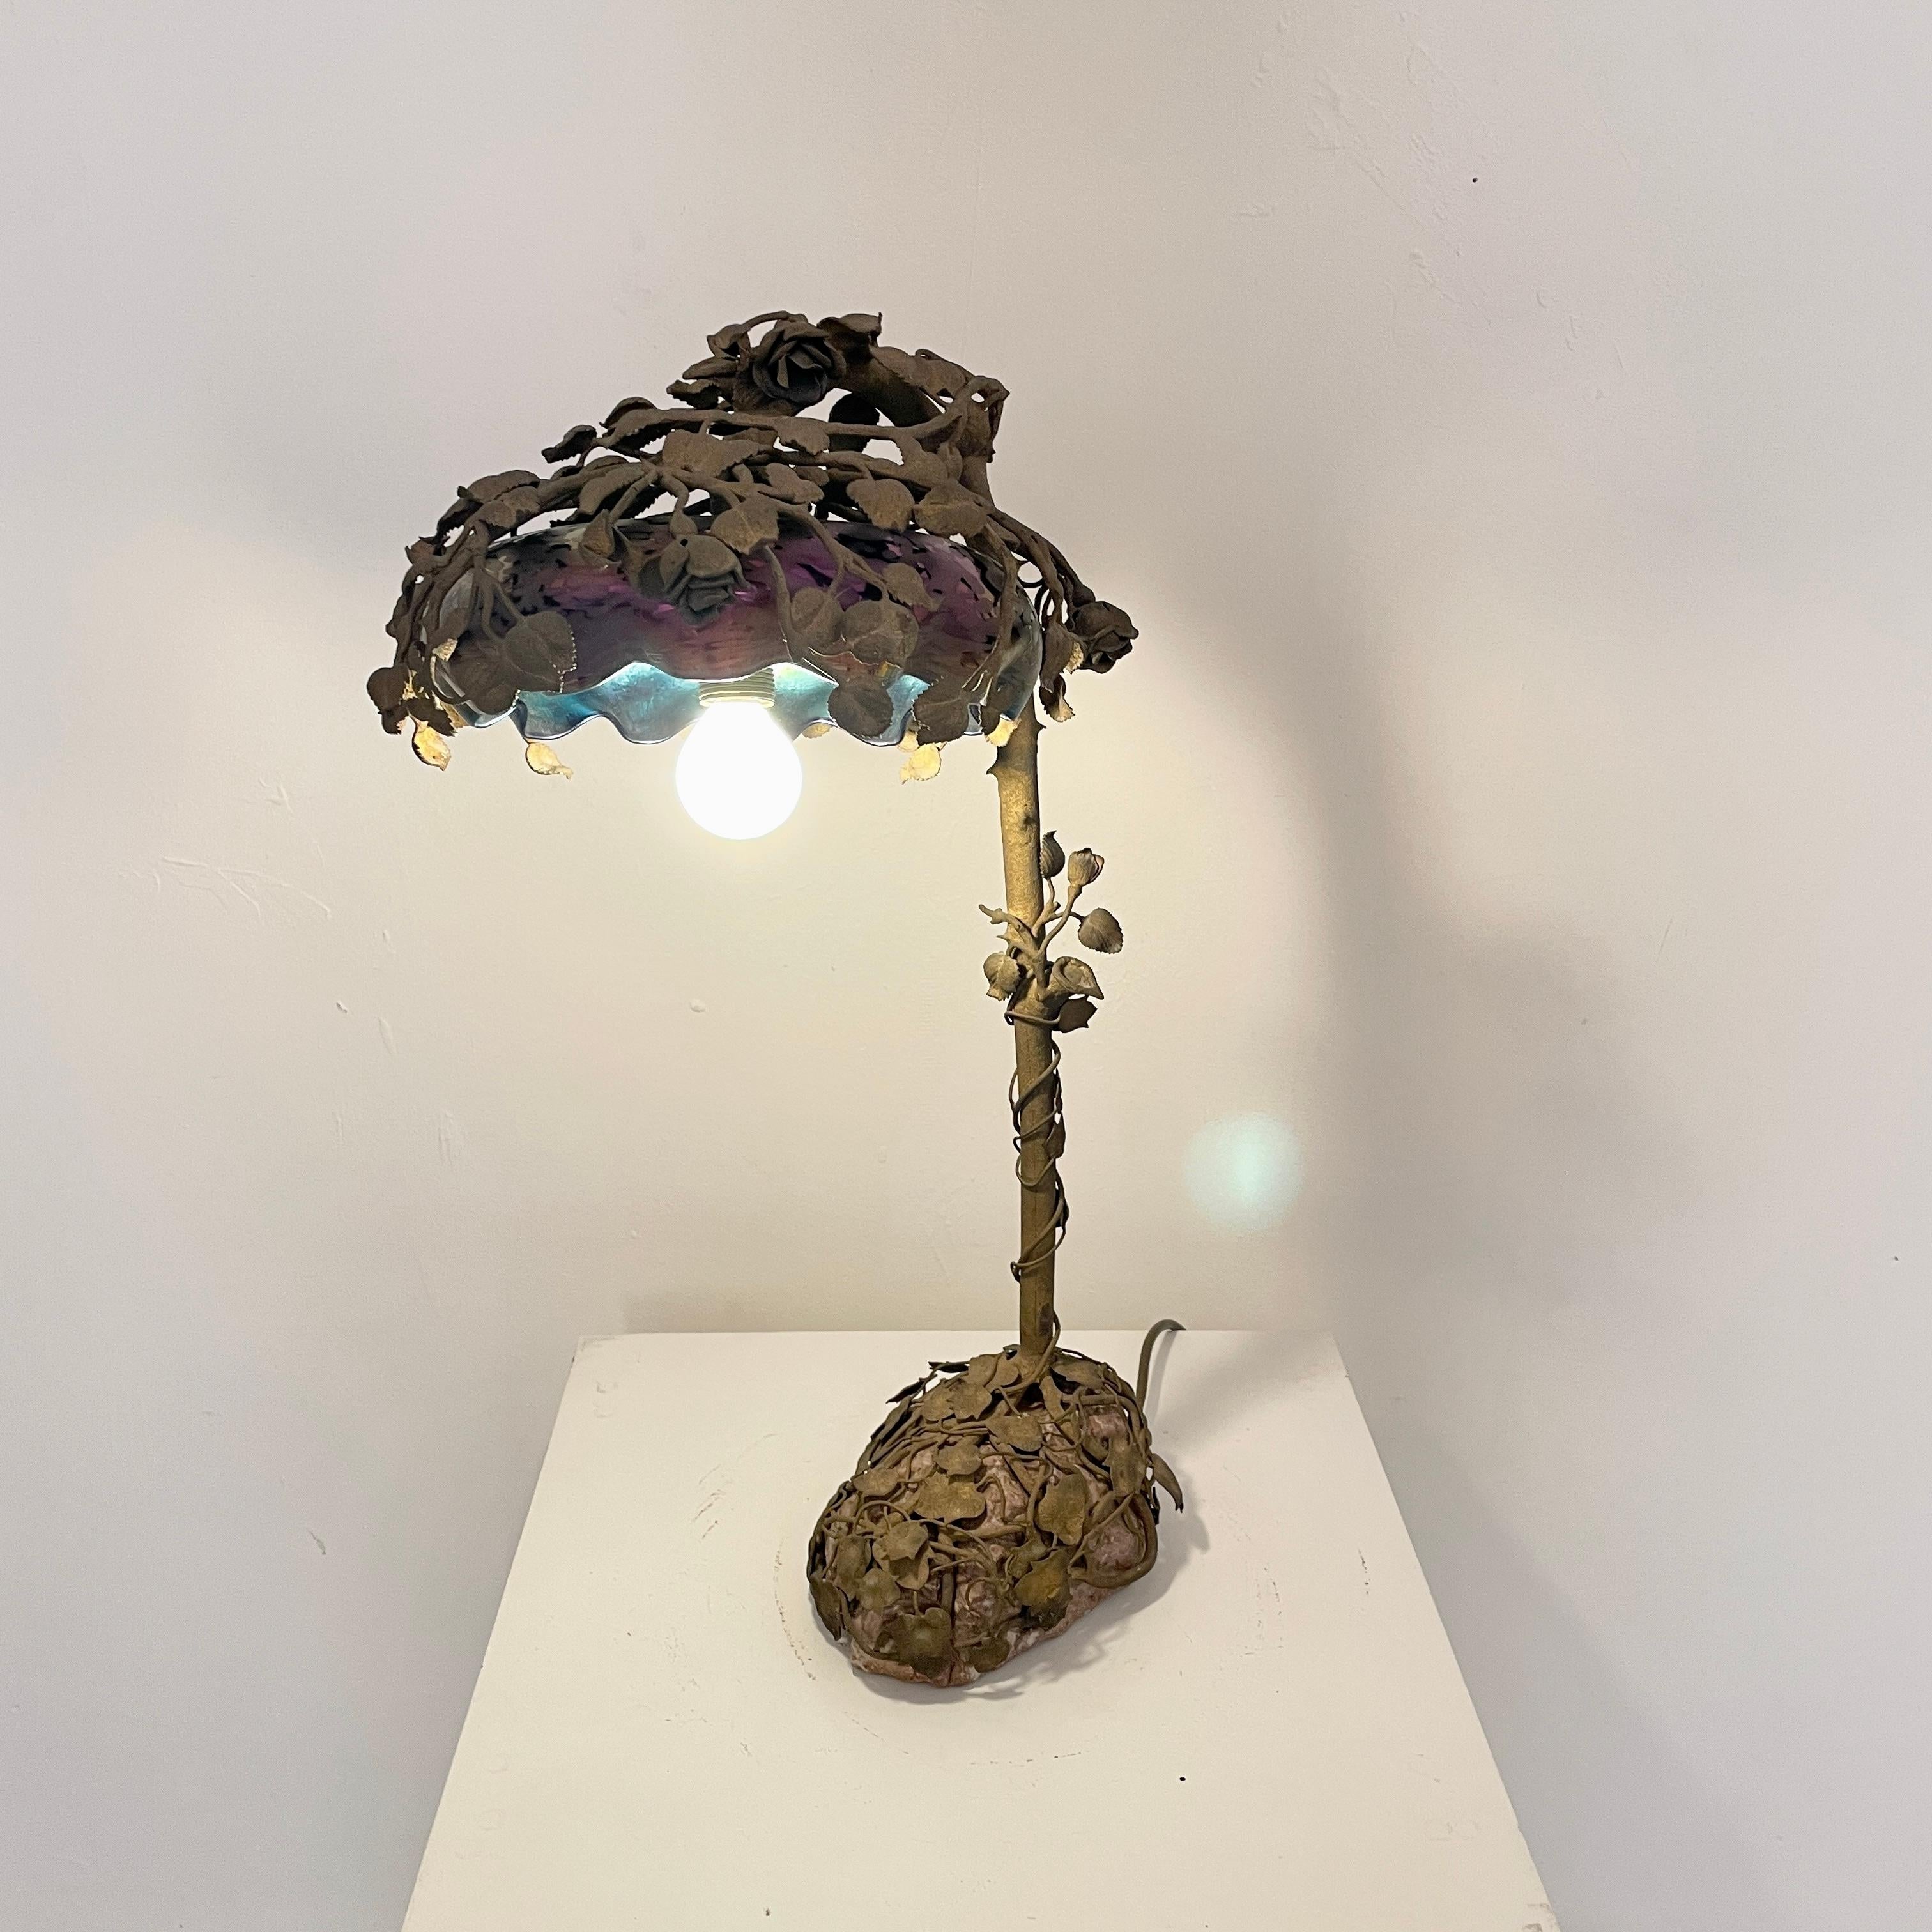 Diese ausgefallene und sehr seltene französische Jugendstil-Tischlampe mit Blumenmuster wurde um 1910 in Paris hergestellt. 
Sie ist aus Bronze gegossen und zeigt einen Rosenstrauch auf einem echten Steinsockel. Der Lampenschirm ist aus emailliertem